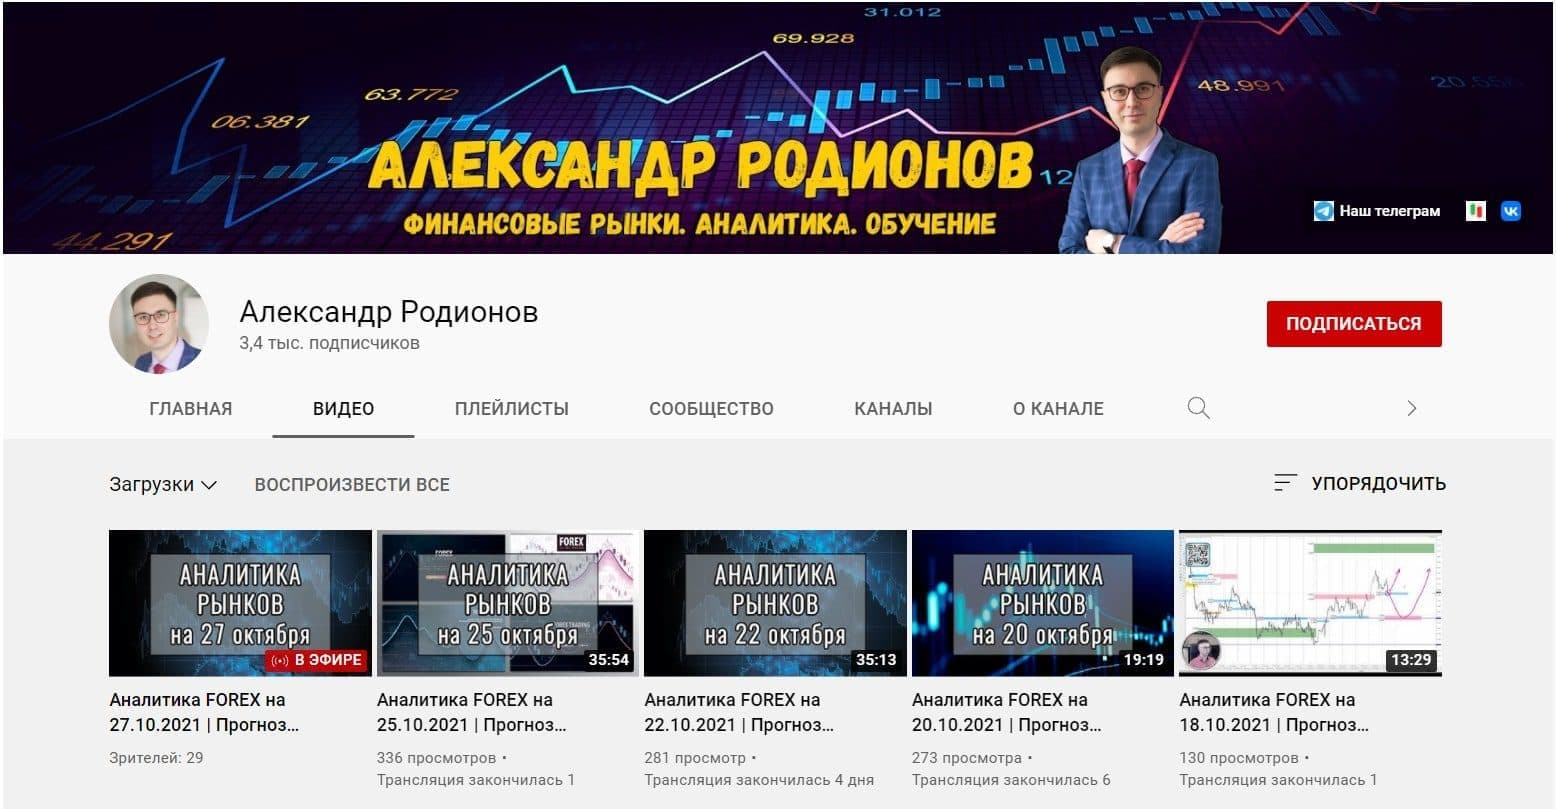 Ютуб канал Александра Родионова